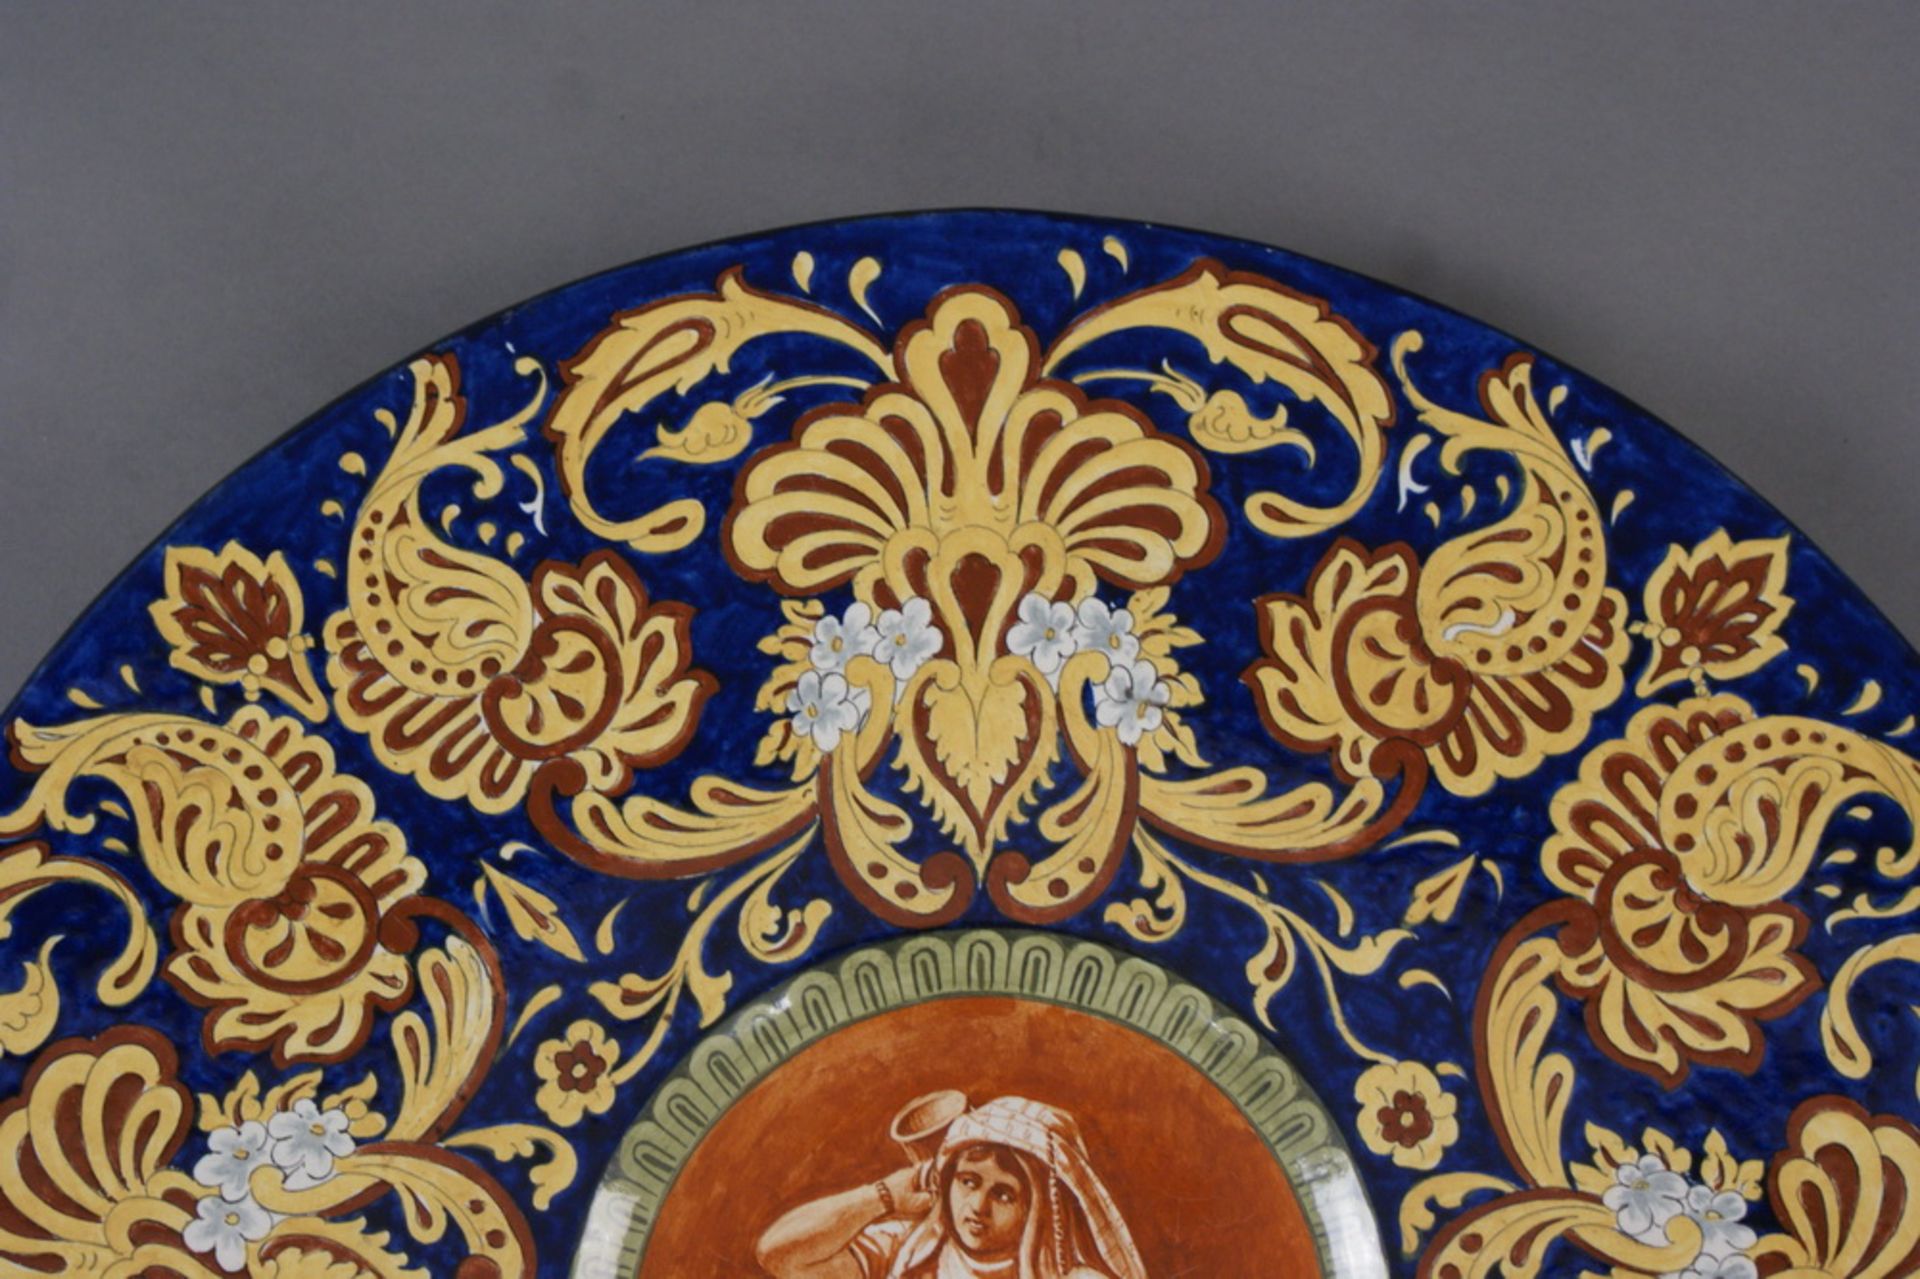 GROSSER SCHAUTELLER Keramik, bunt glasiert, Rückseitig bezeichnet, Restauriert, besch.,Durchmesser - Bild 3 aus 5